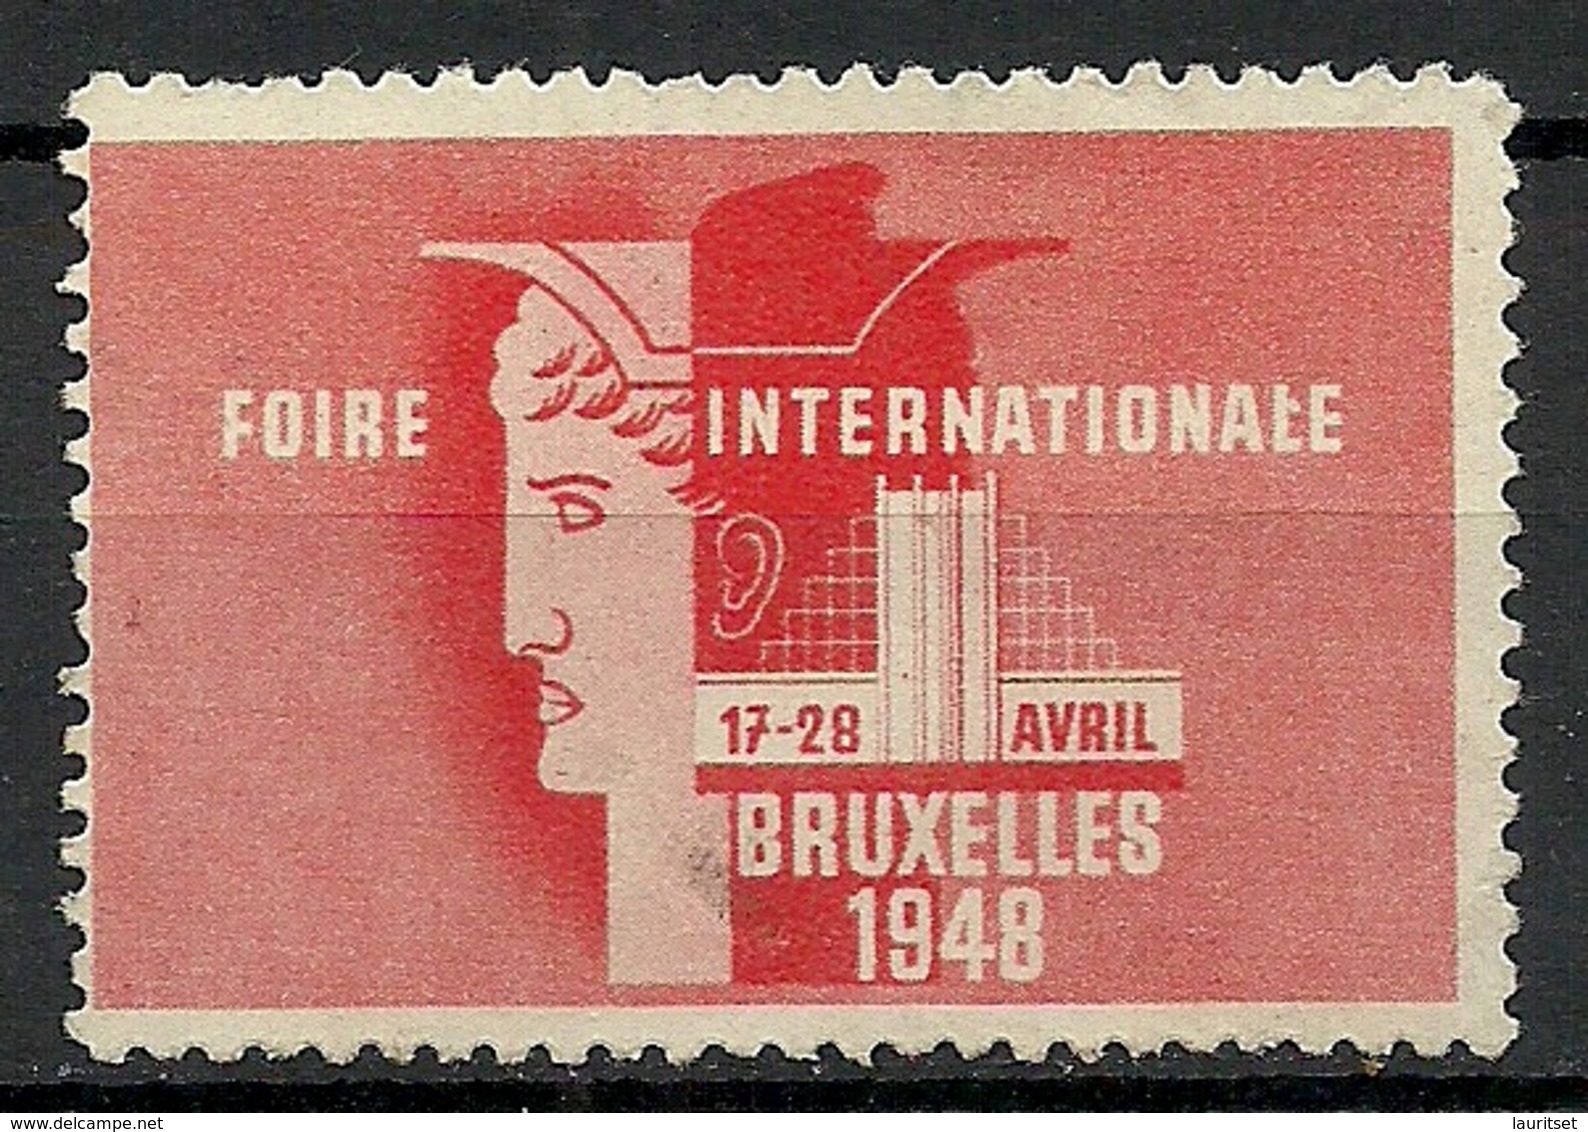 Belgium 1948 Foire Internationale Bruxelles Messe Fair (*) - Erinnophilia [E]